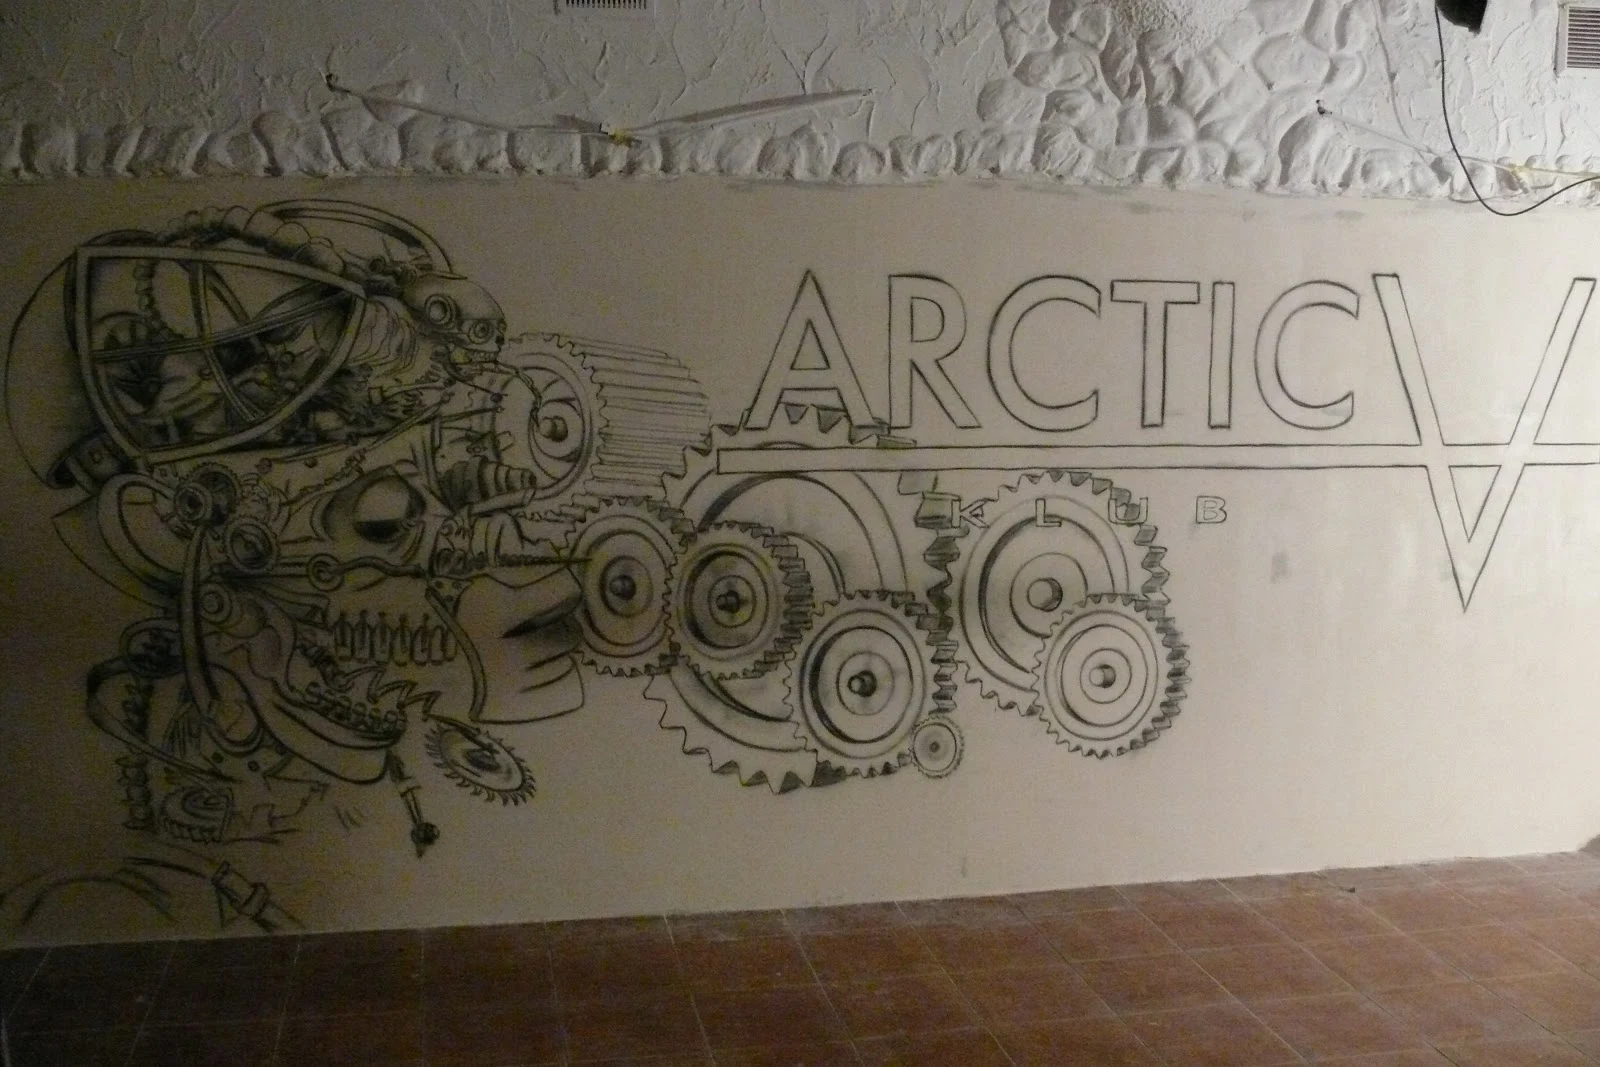 Niesamowity klub w Płocku Arctica, malowanie graffiti, aranżacja ścian w klubie